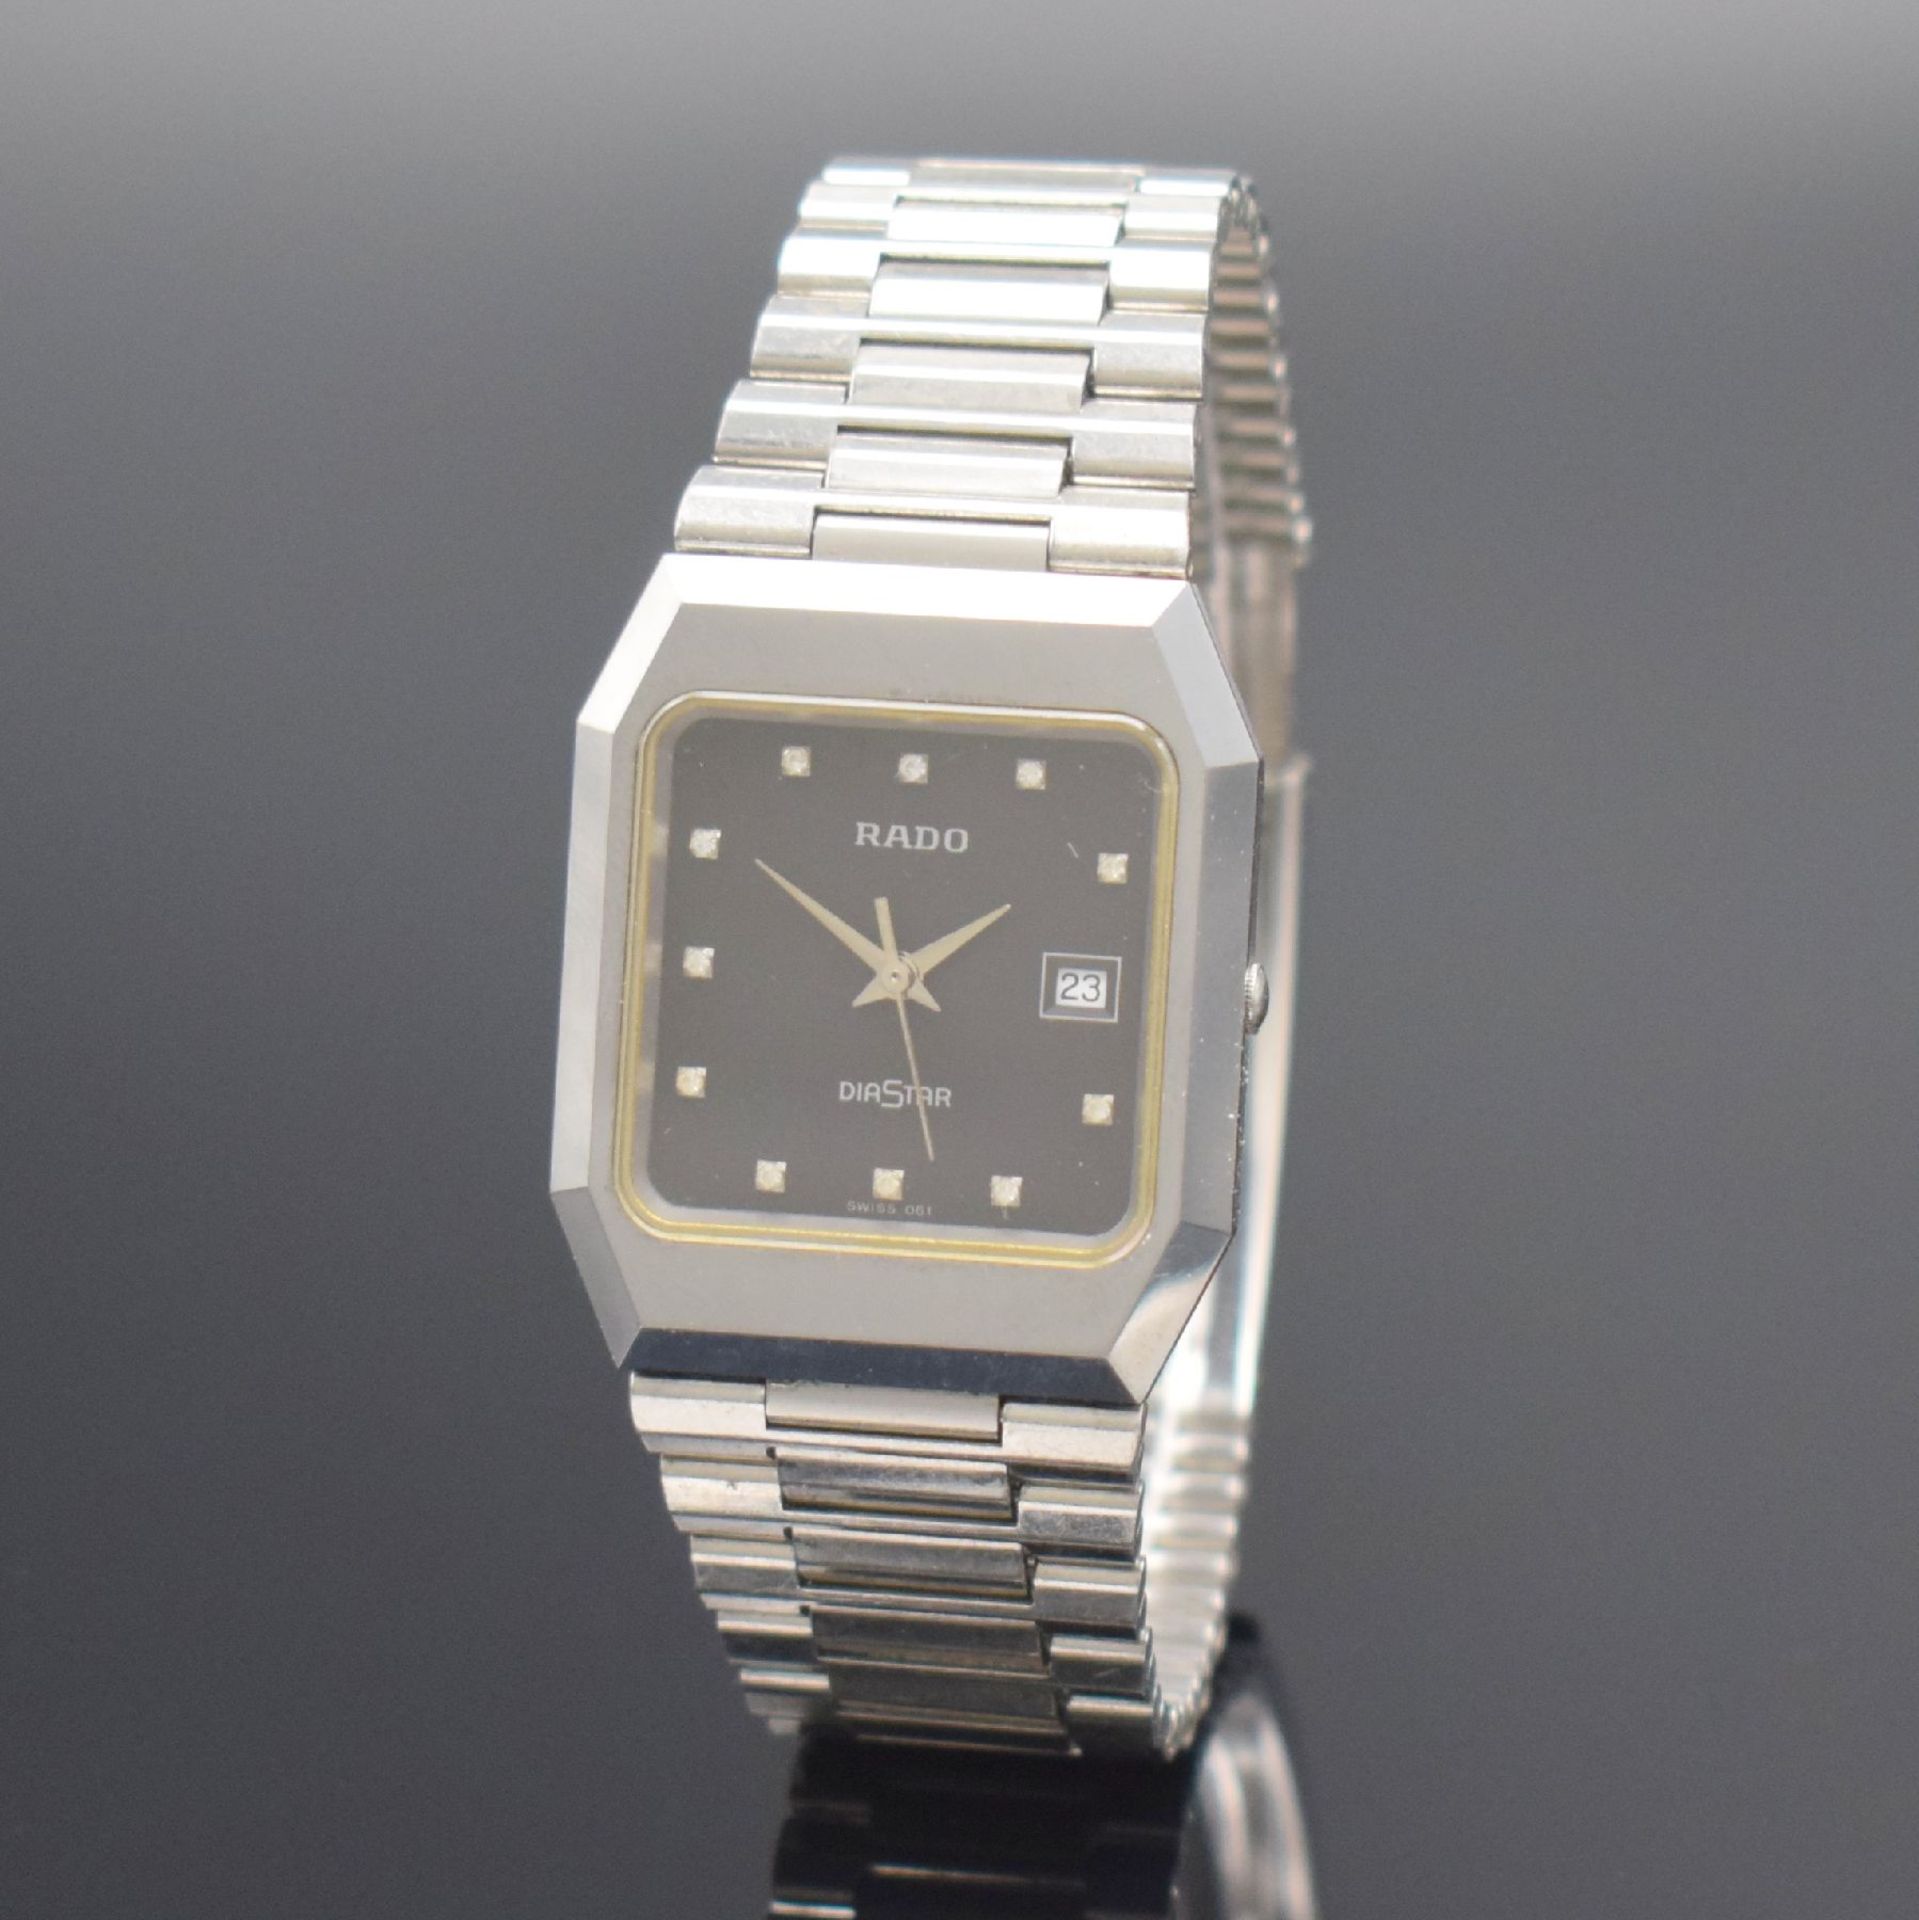 RADO Diastar Armbanduhr in Stahl Referenz 129.0292.3, - Bild 3 aus 6